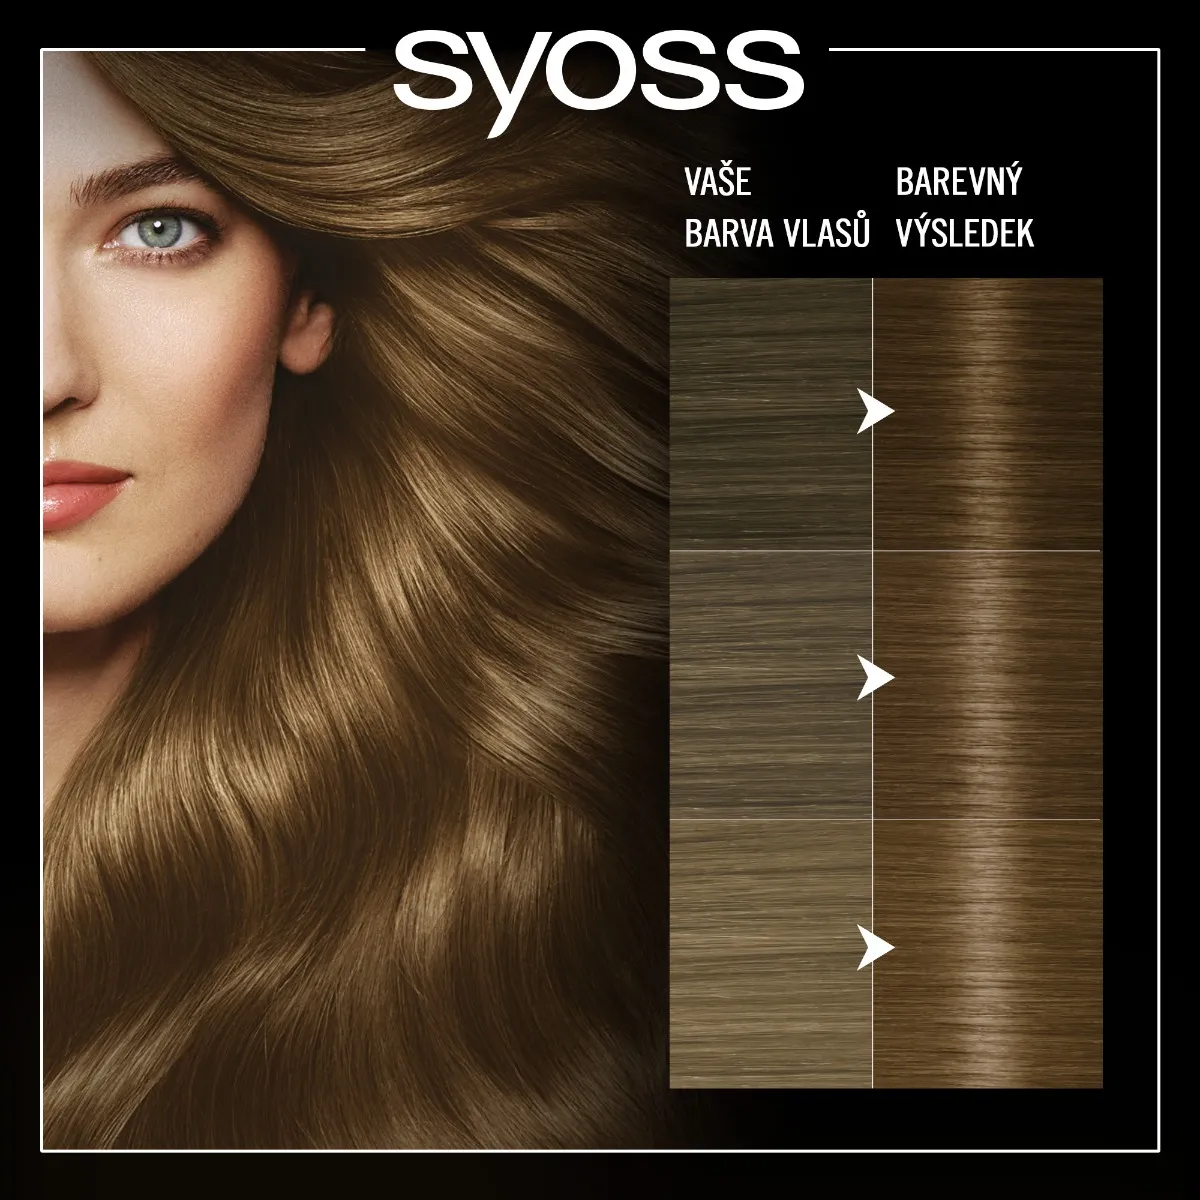 Syoss Oleo Intense Barva na vlasy 6-80 oříškově plavá 50 ml